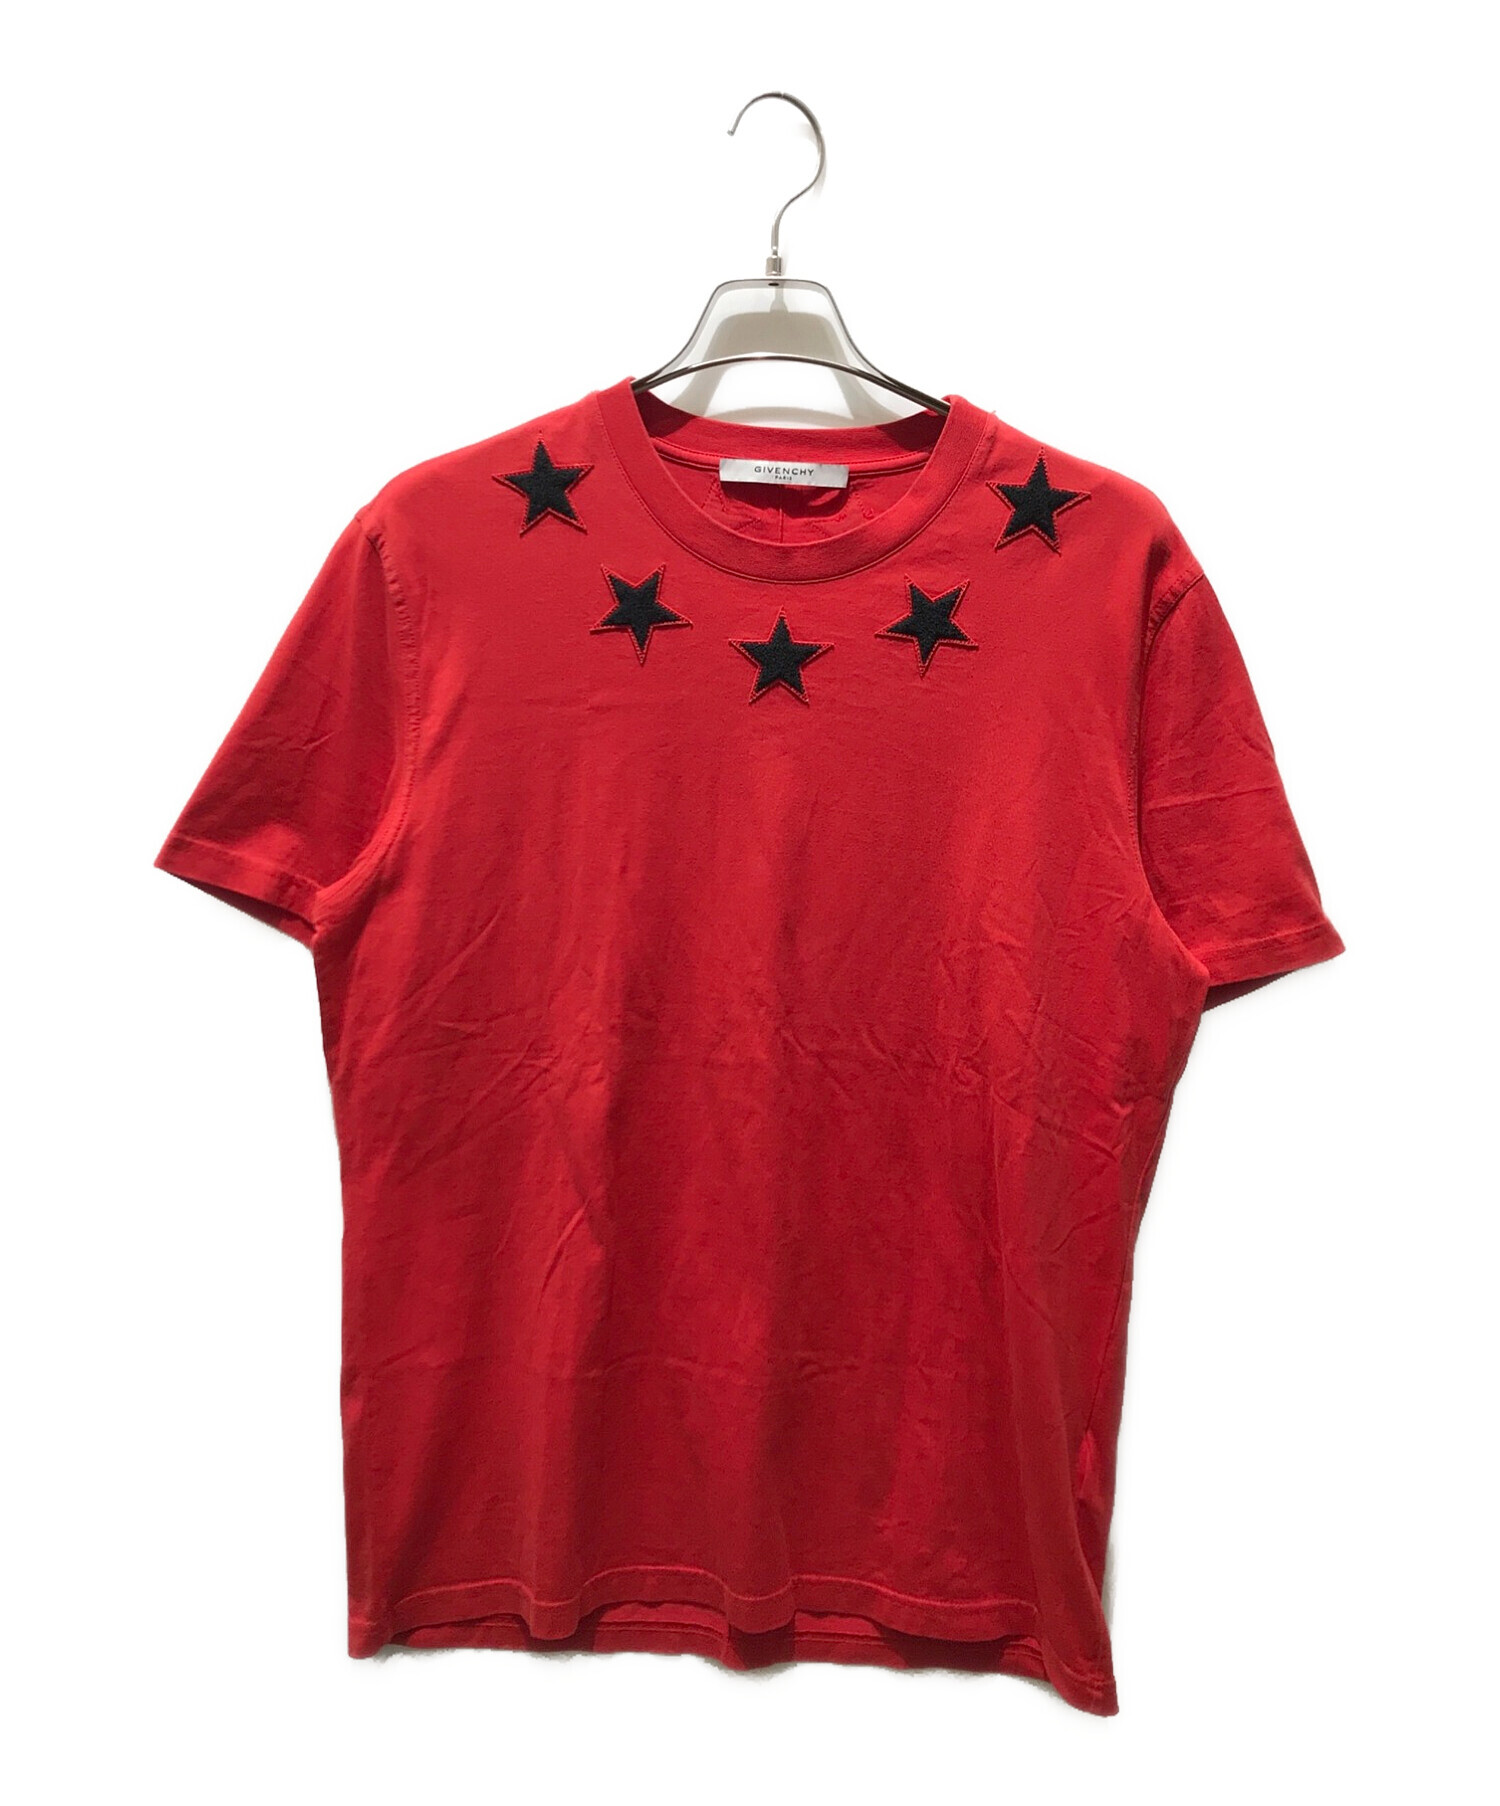 GIVENCHY (ジバンシィ) スターパッチTシャツ レッド サイズ:XL